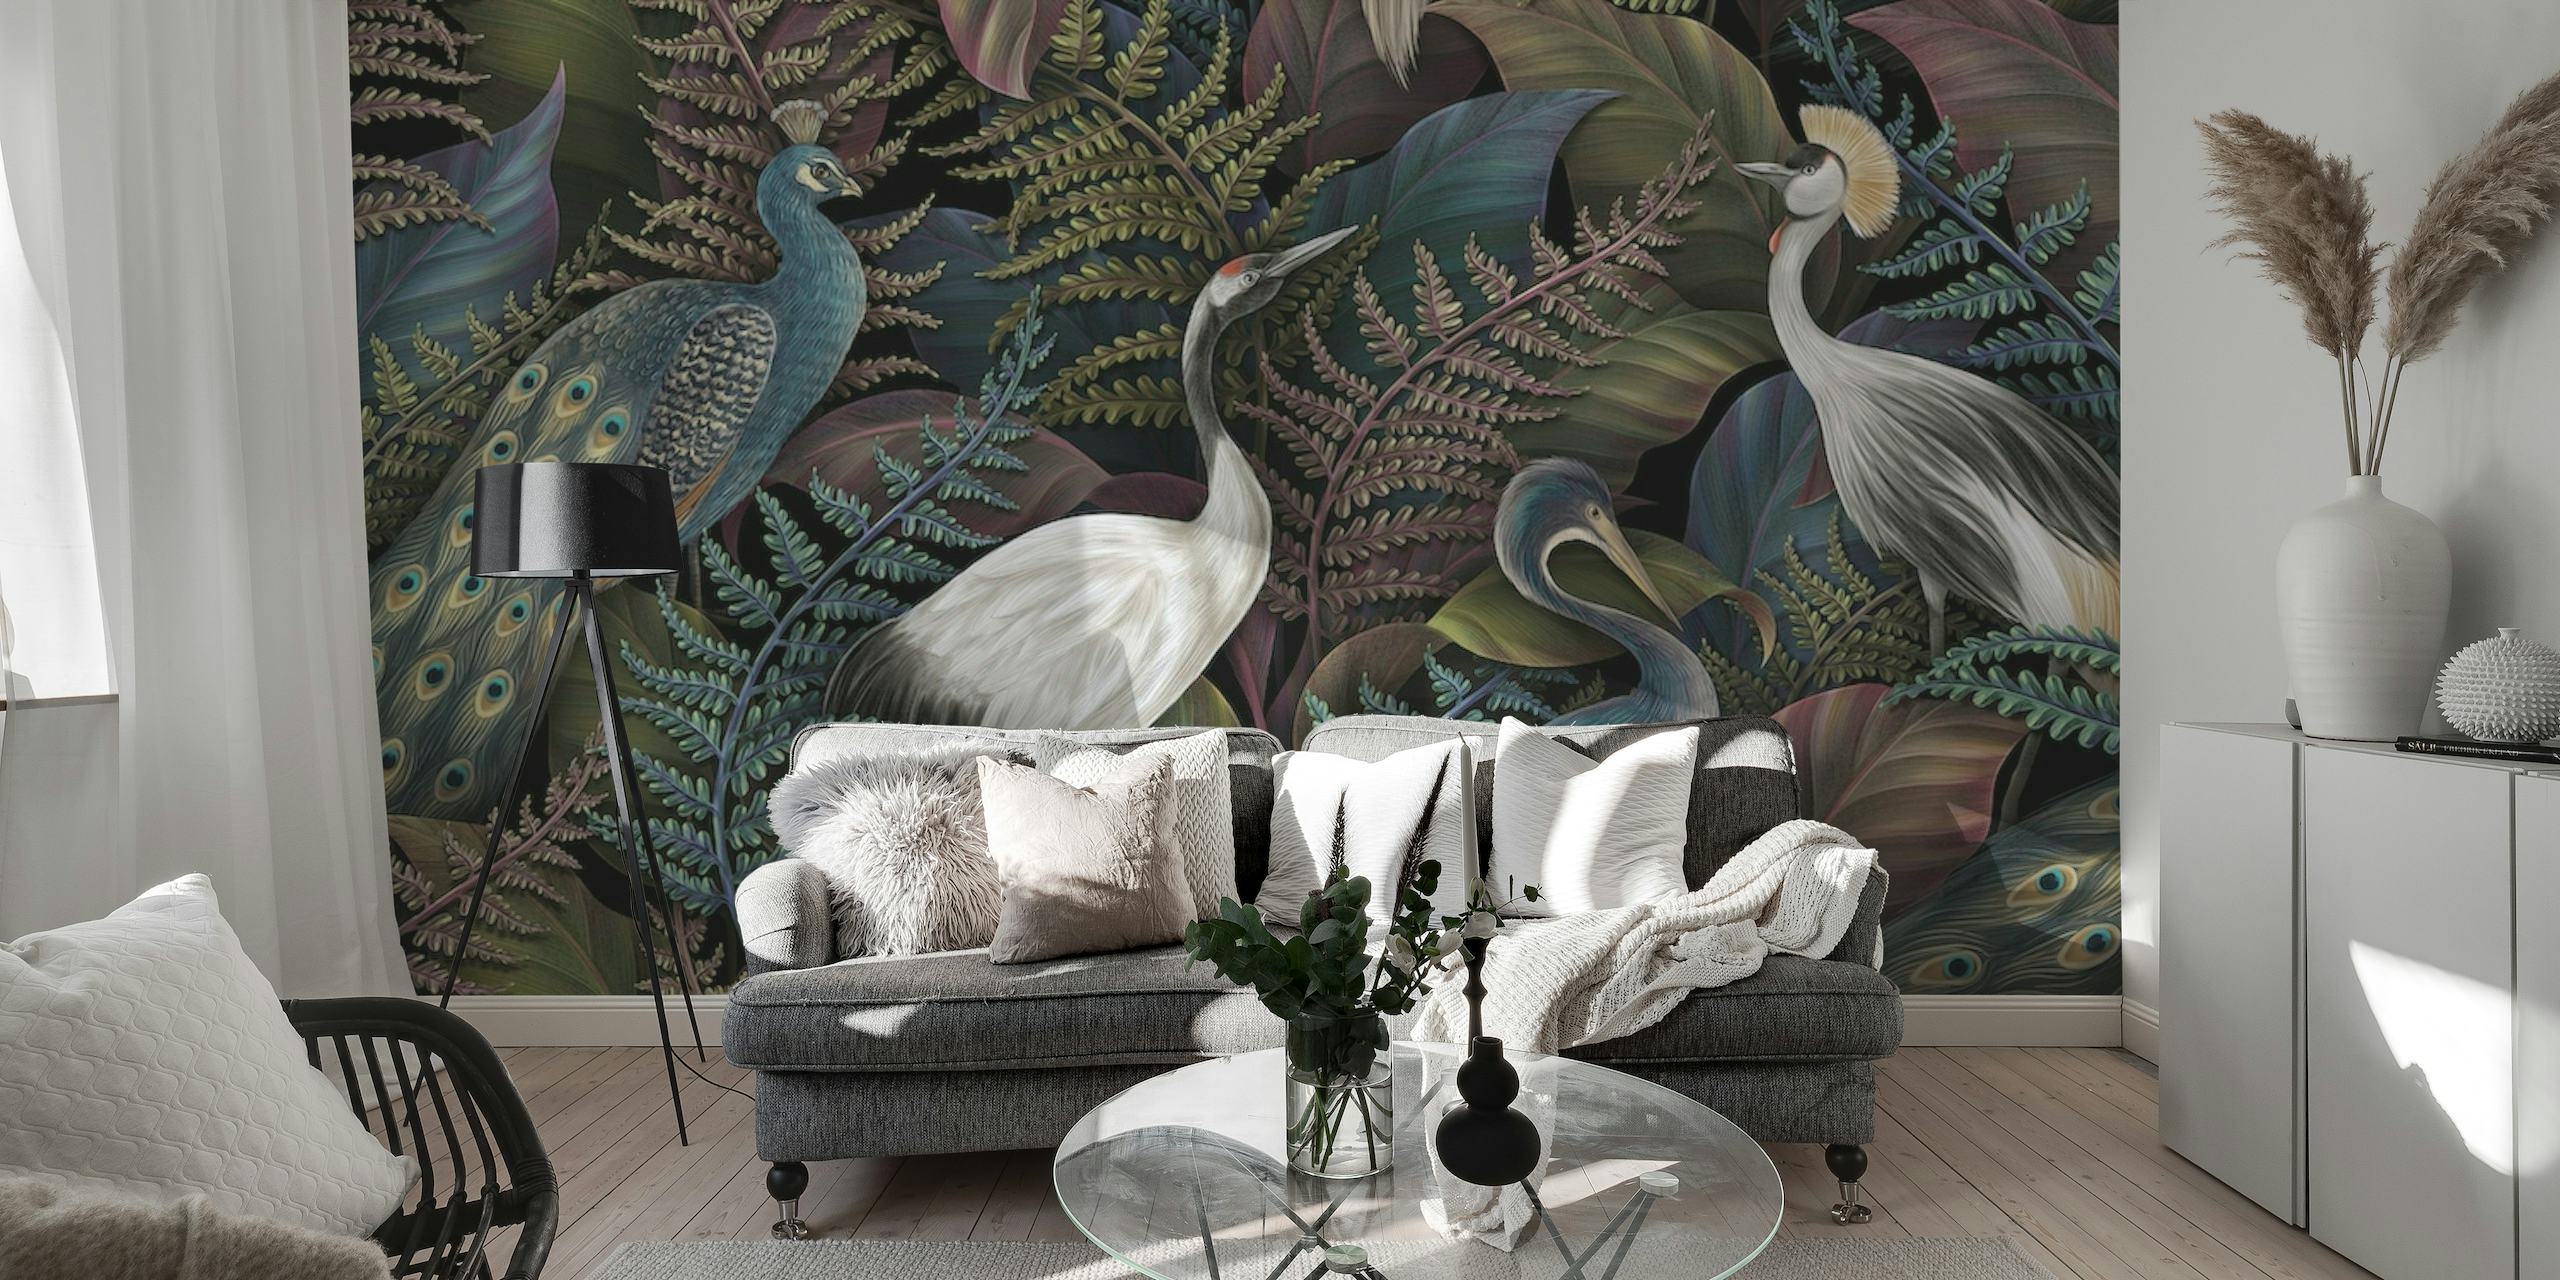 Et sofistikeret vægmaleri med elegante fugle og tropisk løv i tætte junglemiljøer.